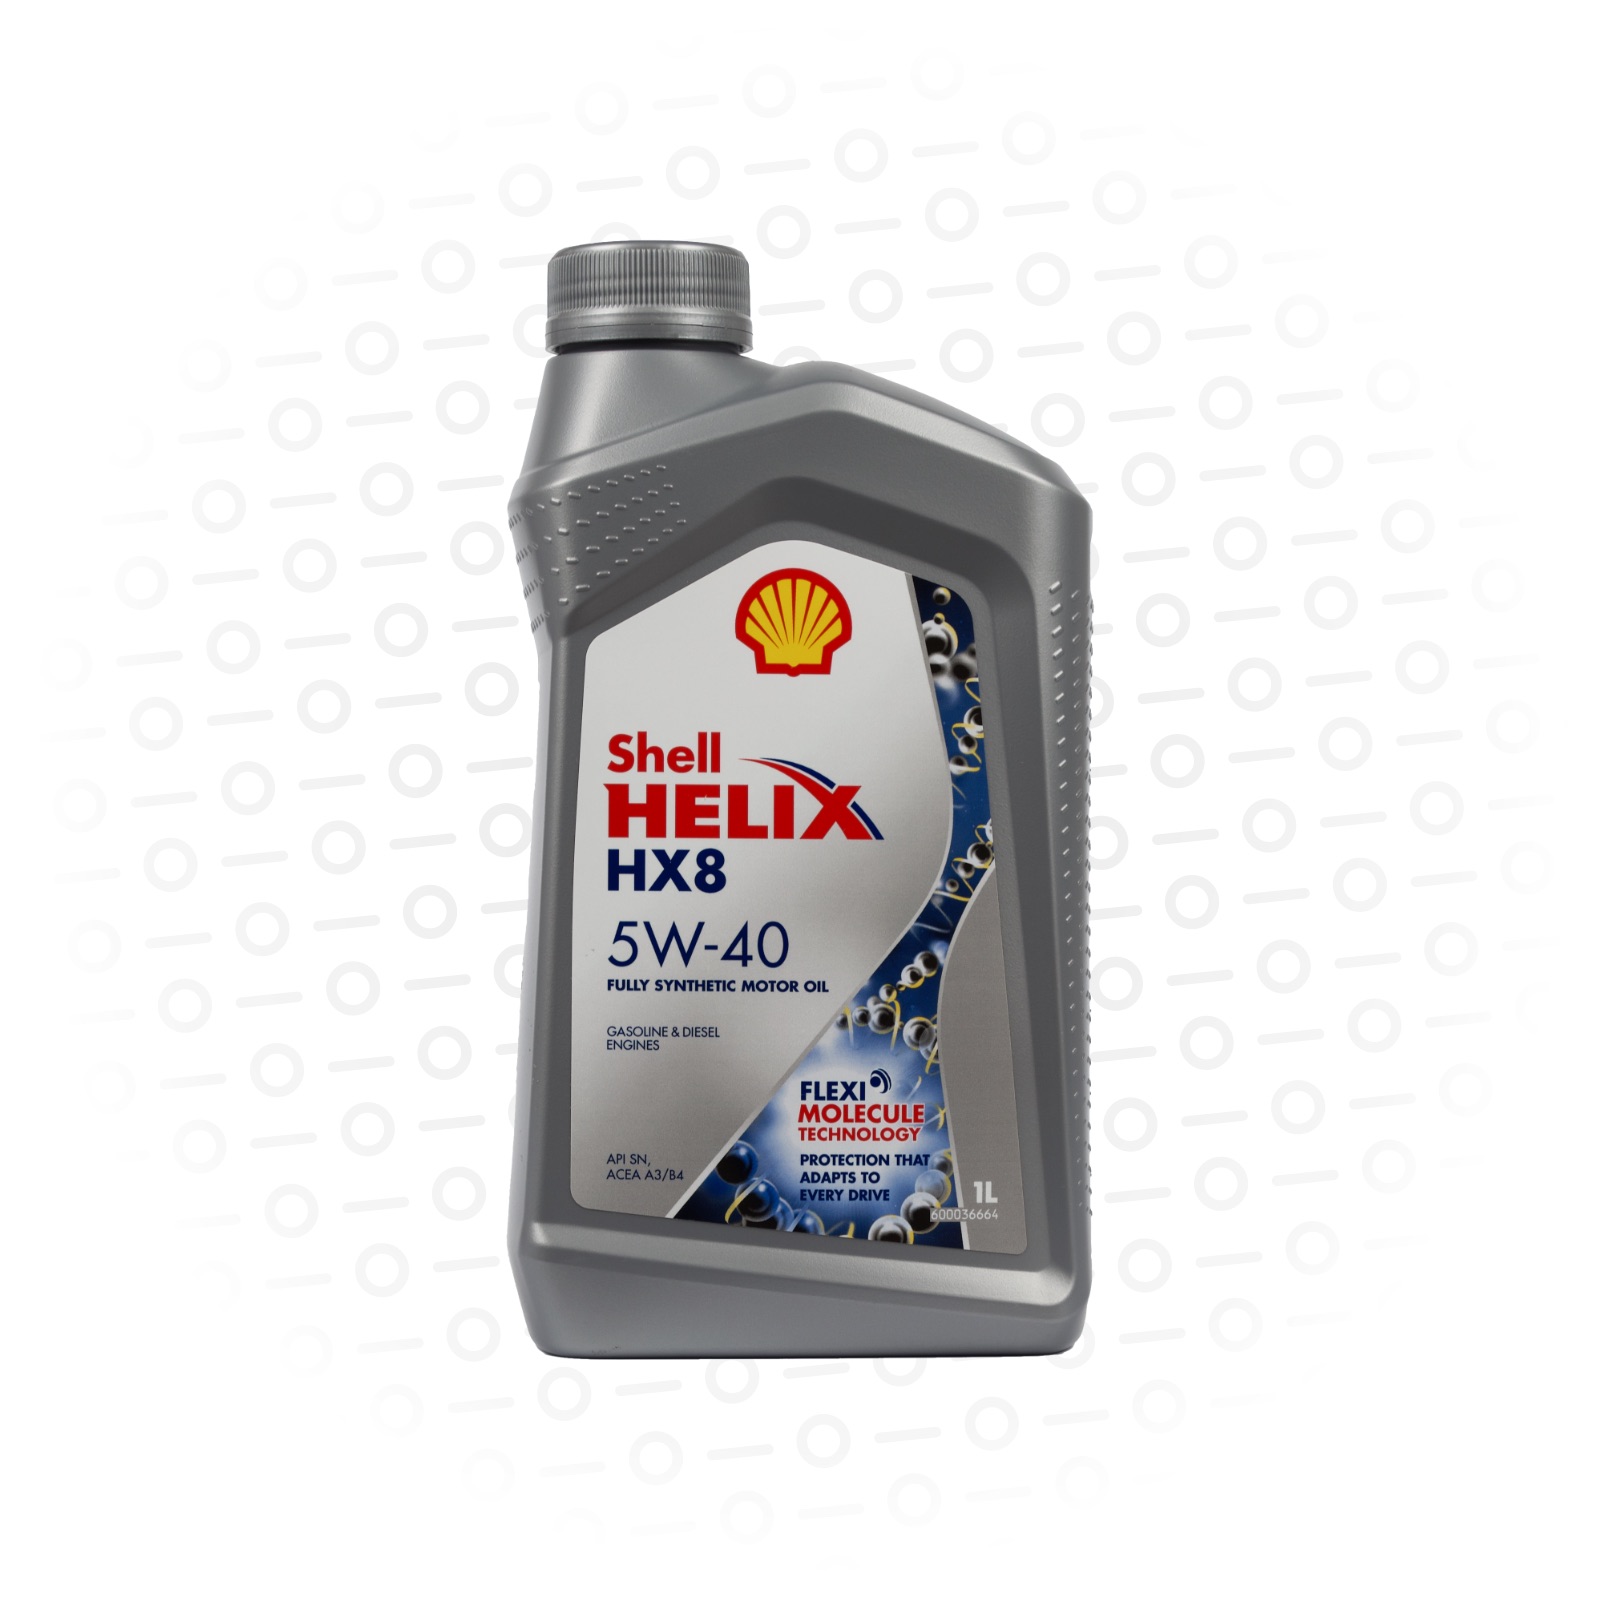 Shell моторное 5w30 hx8. Масло Shell hx8 5w30. Масло моторное 5w-30 синтетика Shell hx8. Shell Helix hx8 Synthetic 5w-40. Shell Helix hx8 5w30 a3/b4.